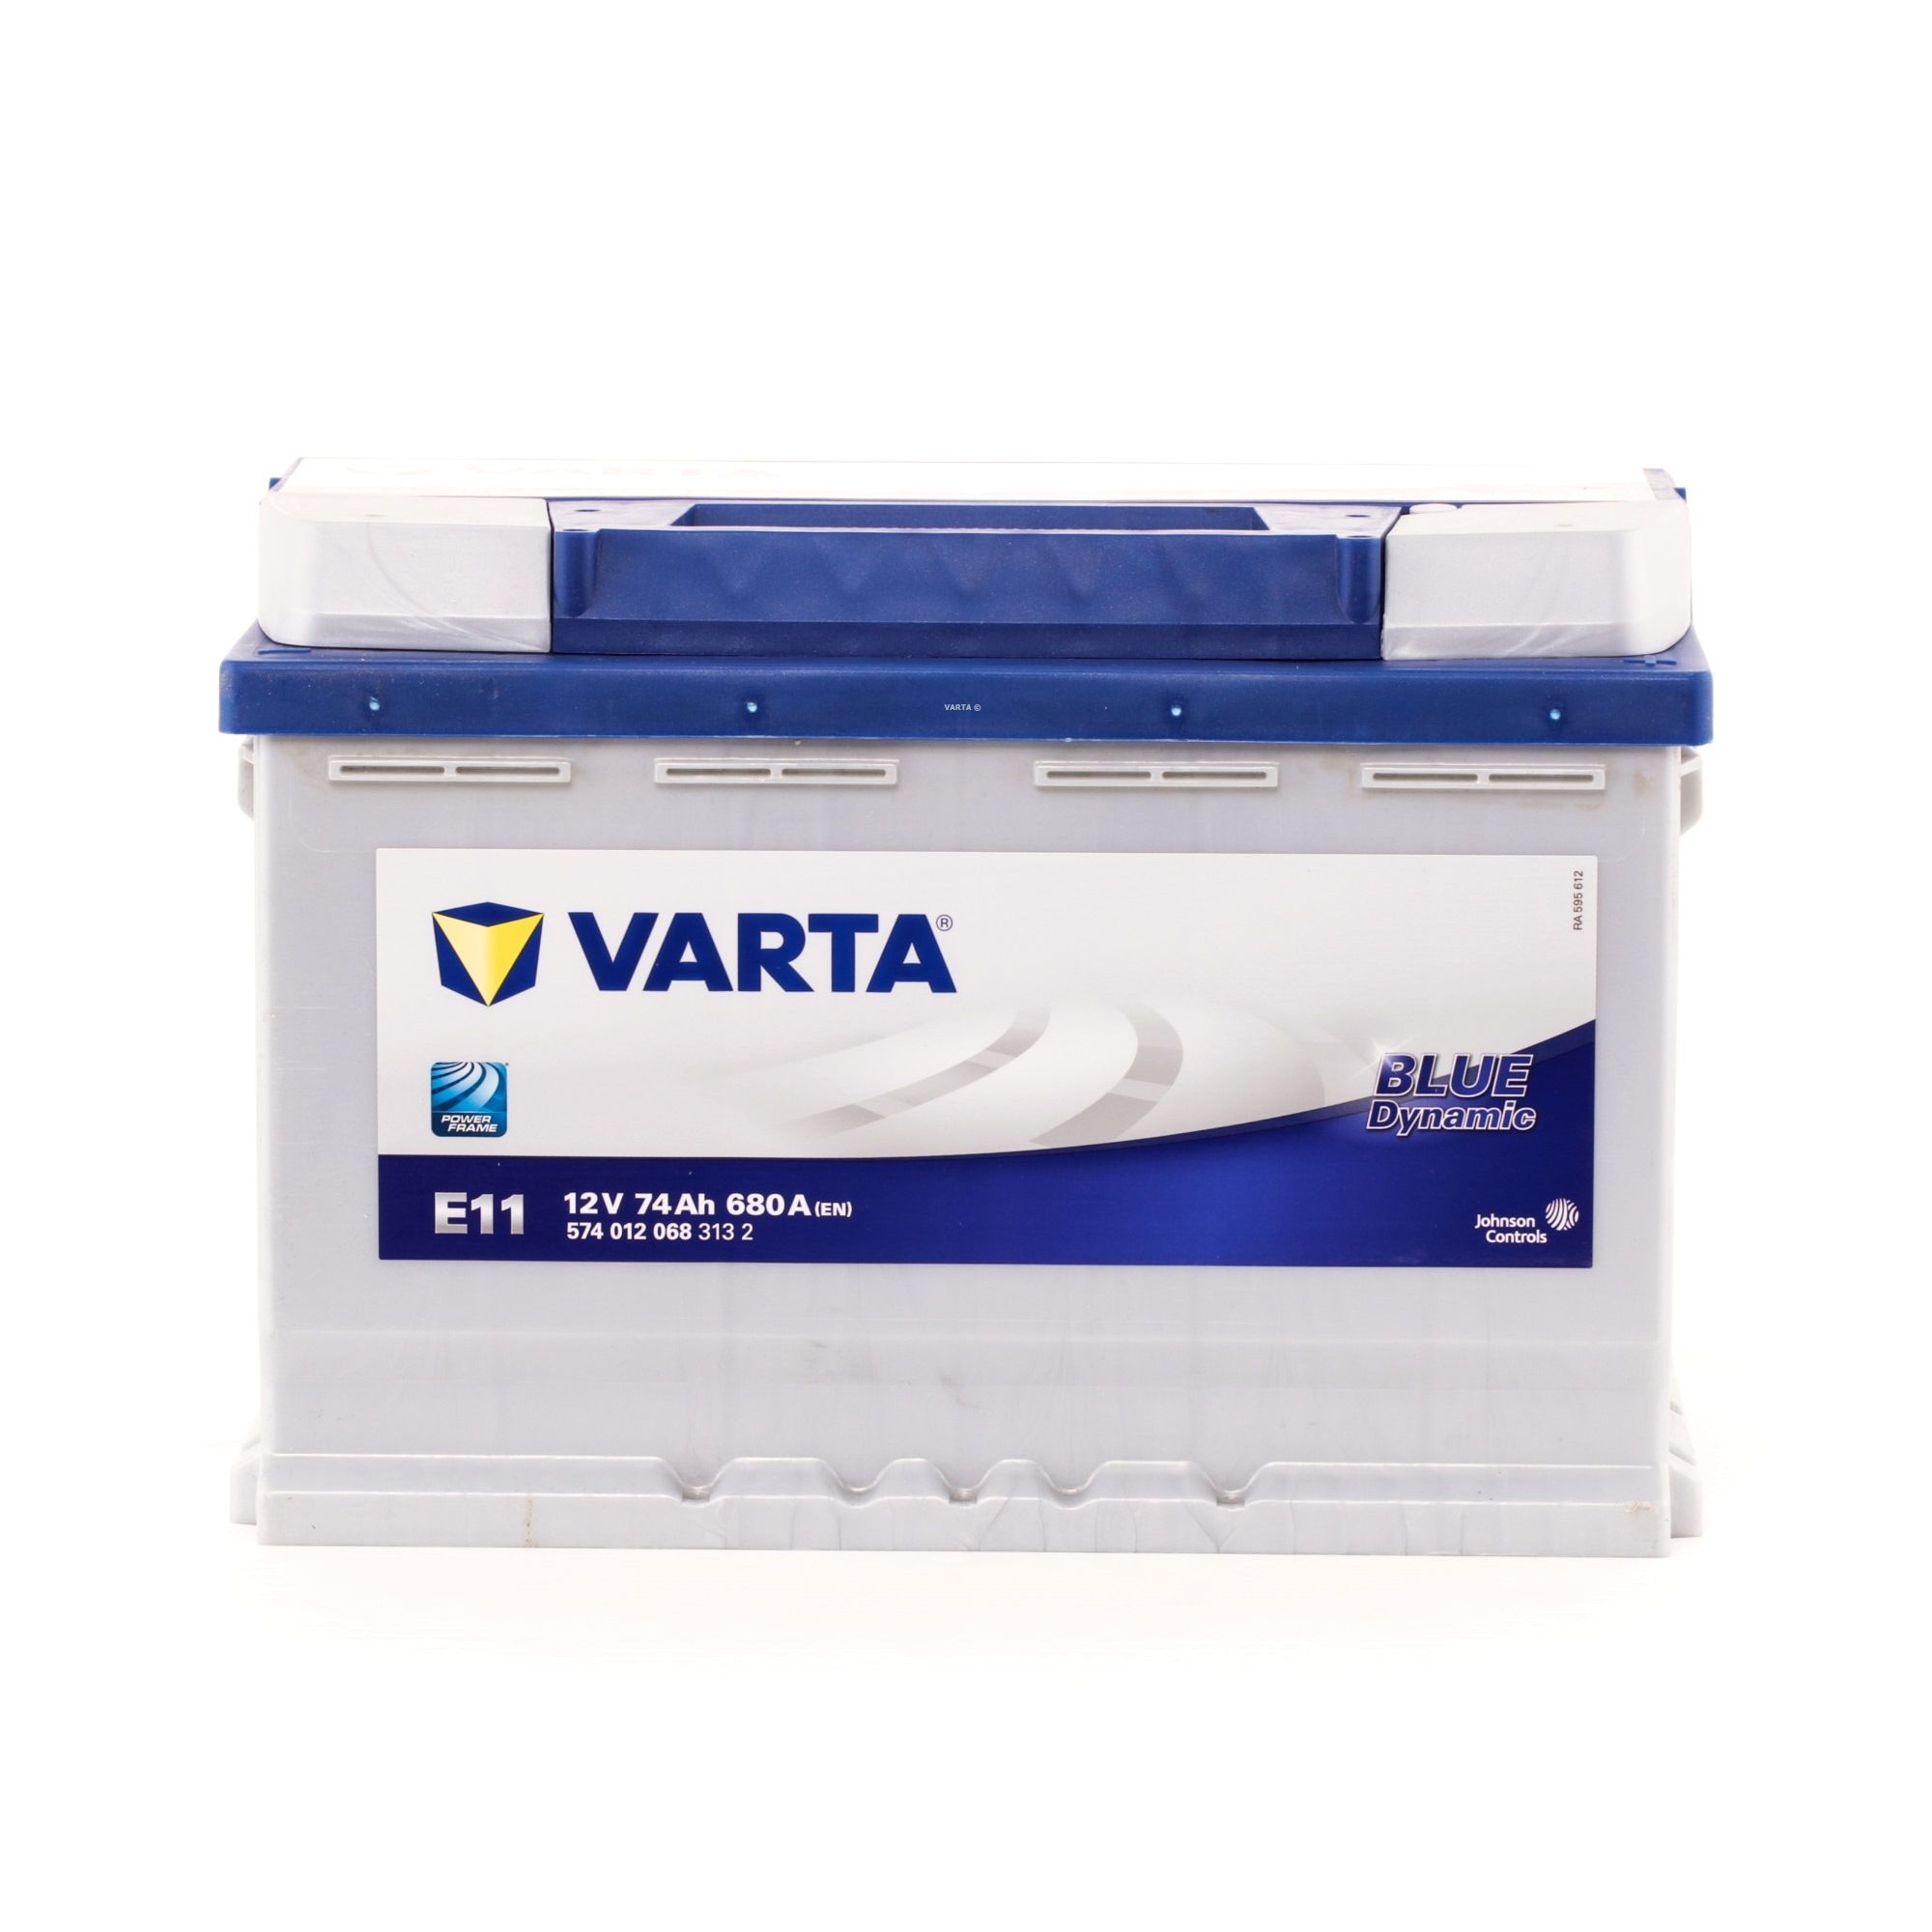 VARTA Starterbatterie 5740120683132